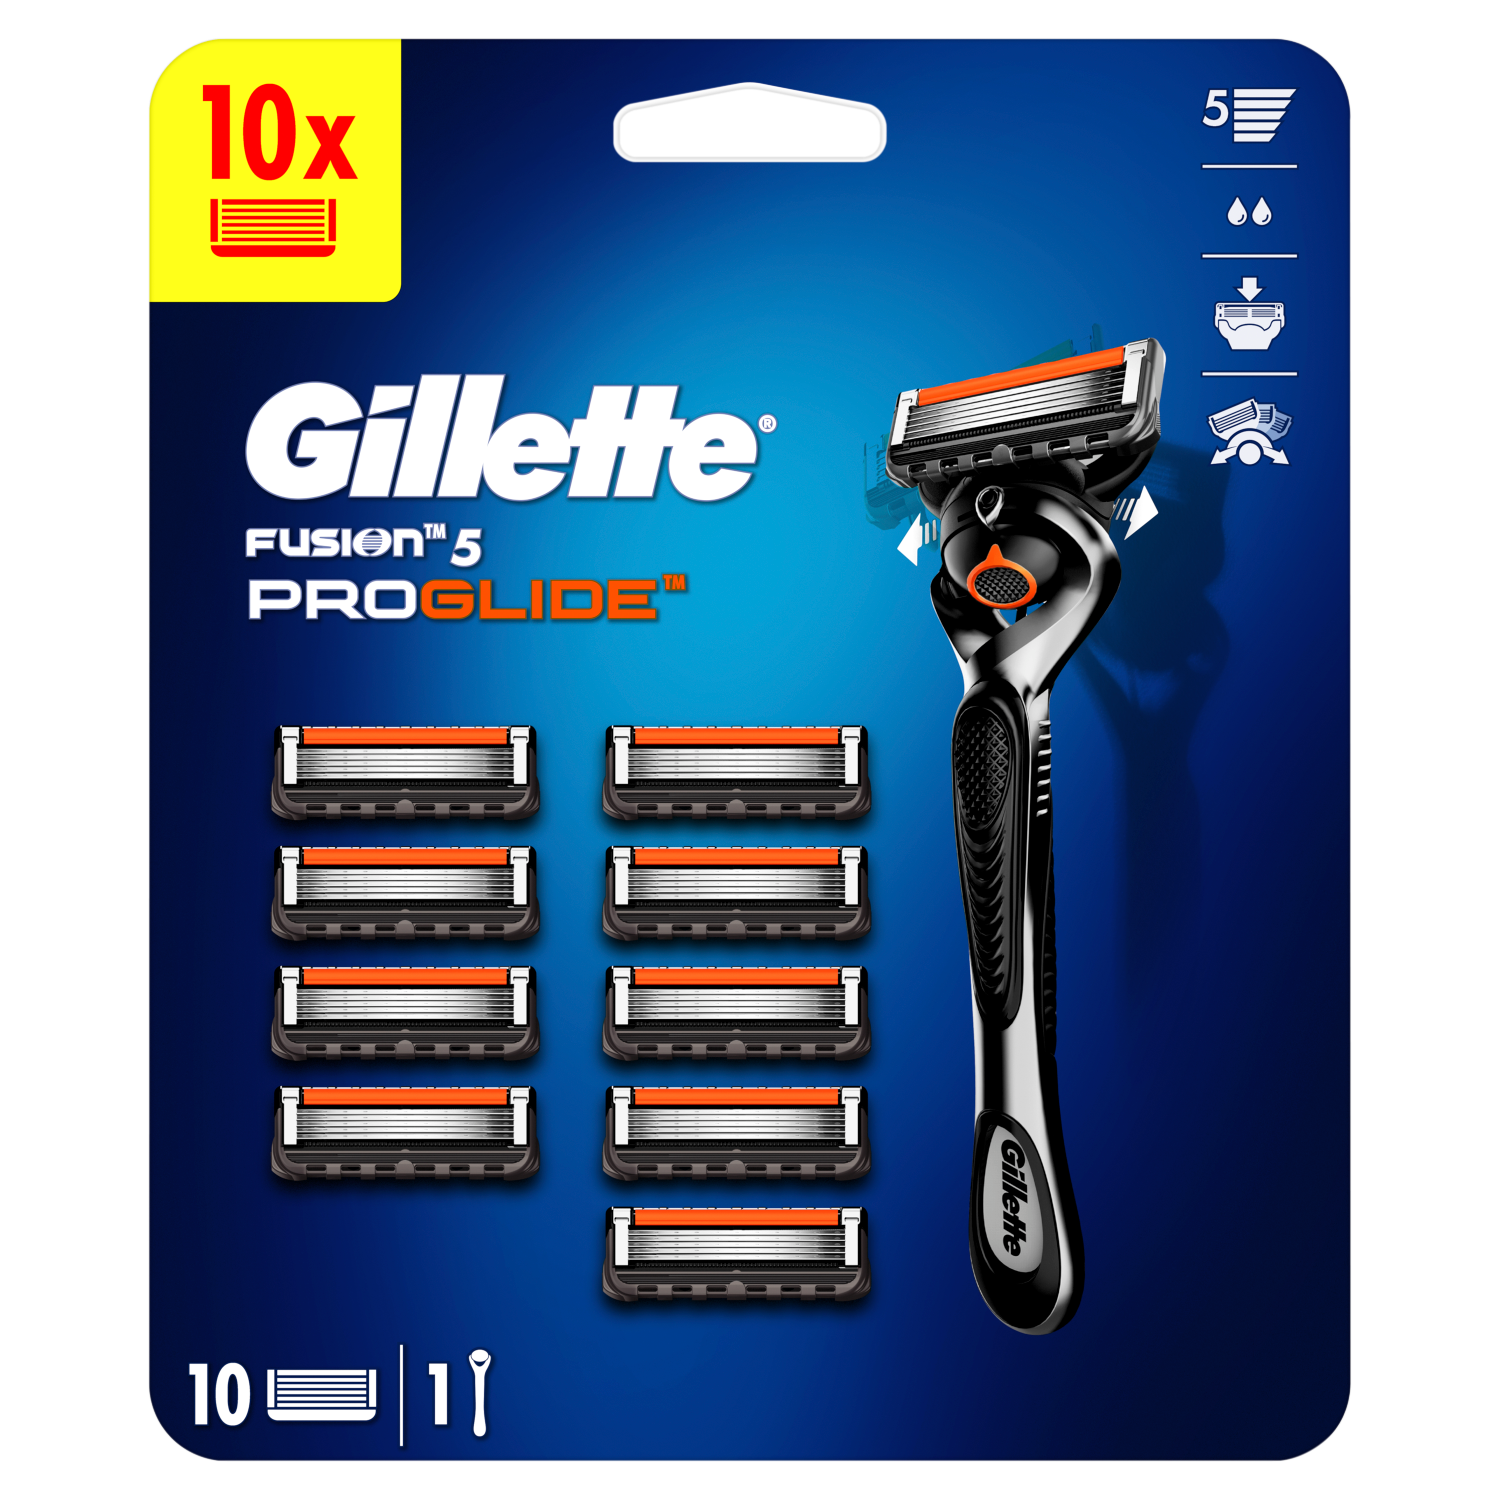 Gillette Fusion 5 Proglide maszynka do golenia, 1 szt. + ostrza, 10 szt./1  opak. | hebe.pl